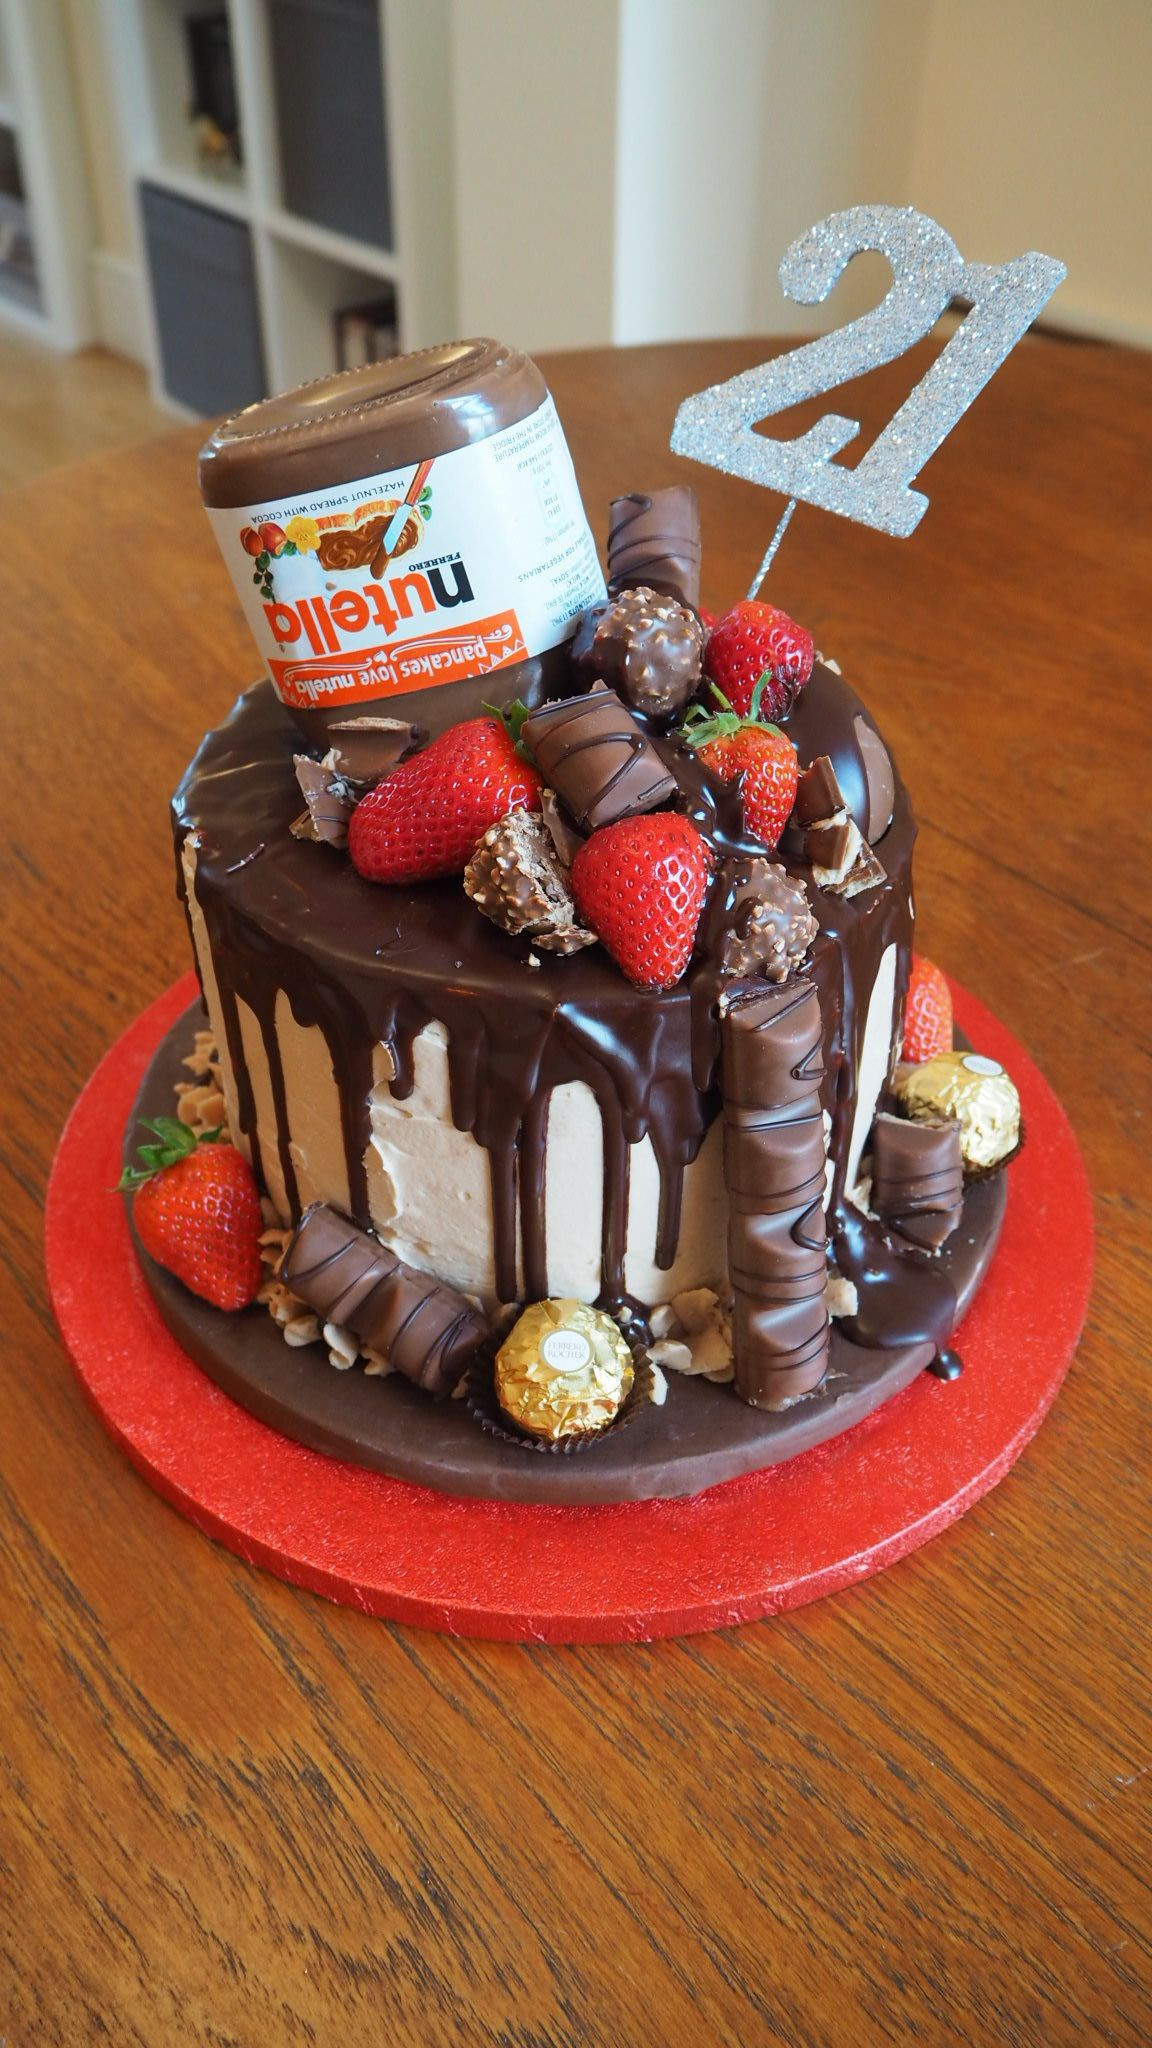 Nutella Birthday Cake
 Nutella Chocolate Drip Cake